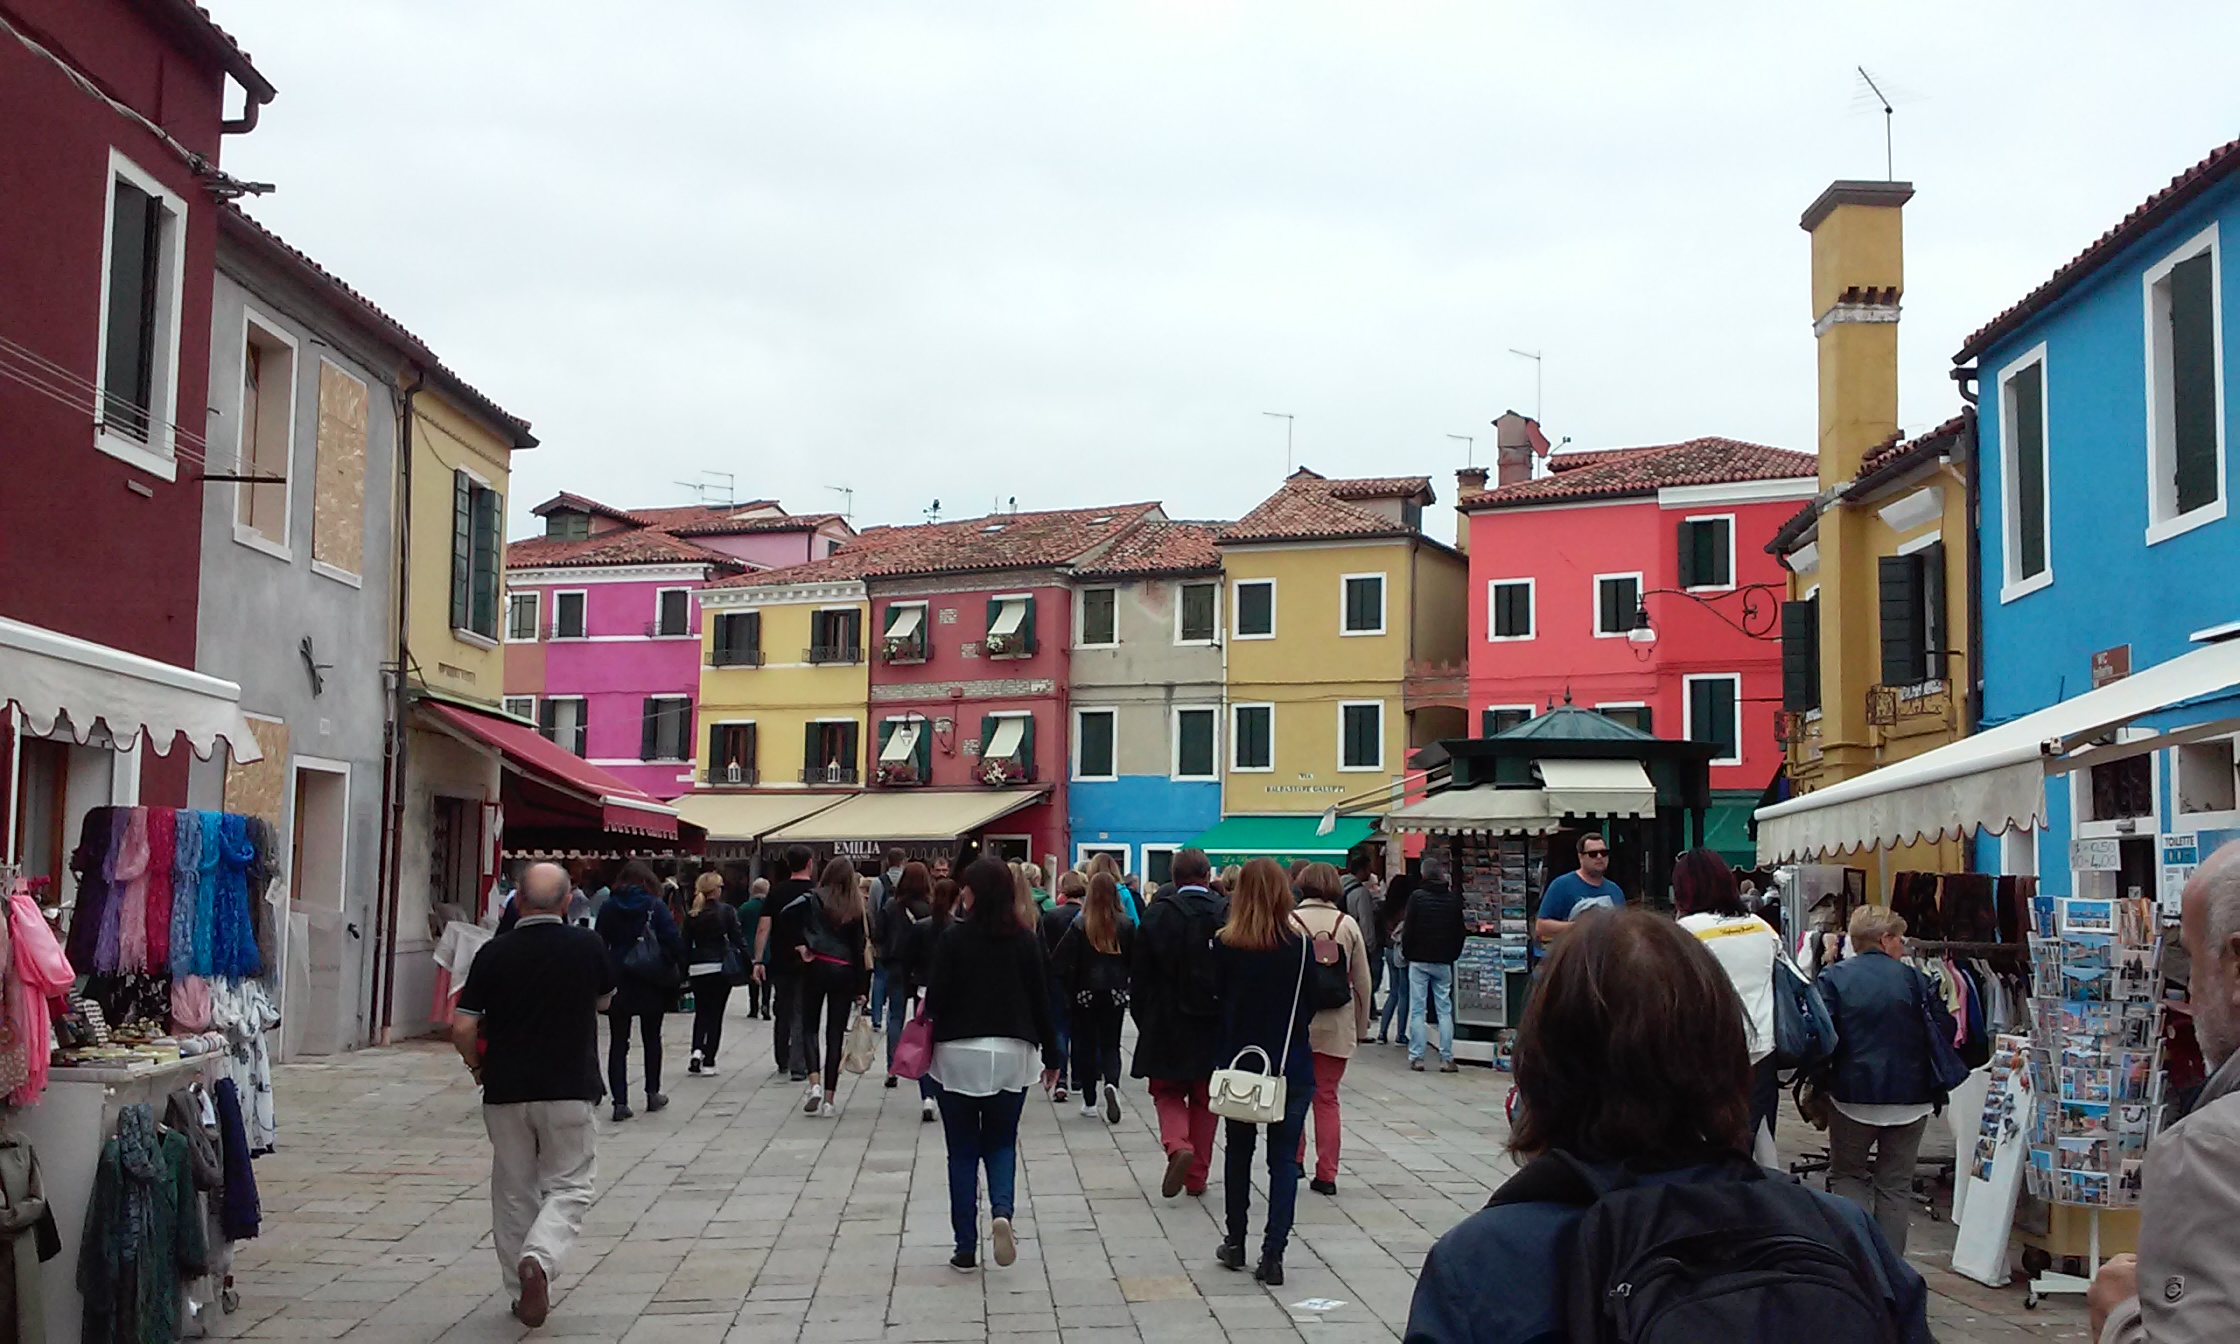 Burano Venice shore excursion